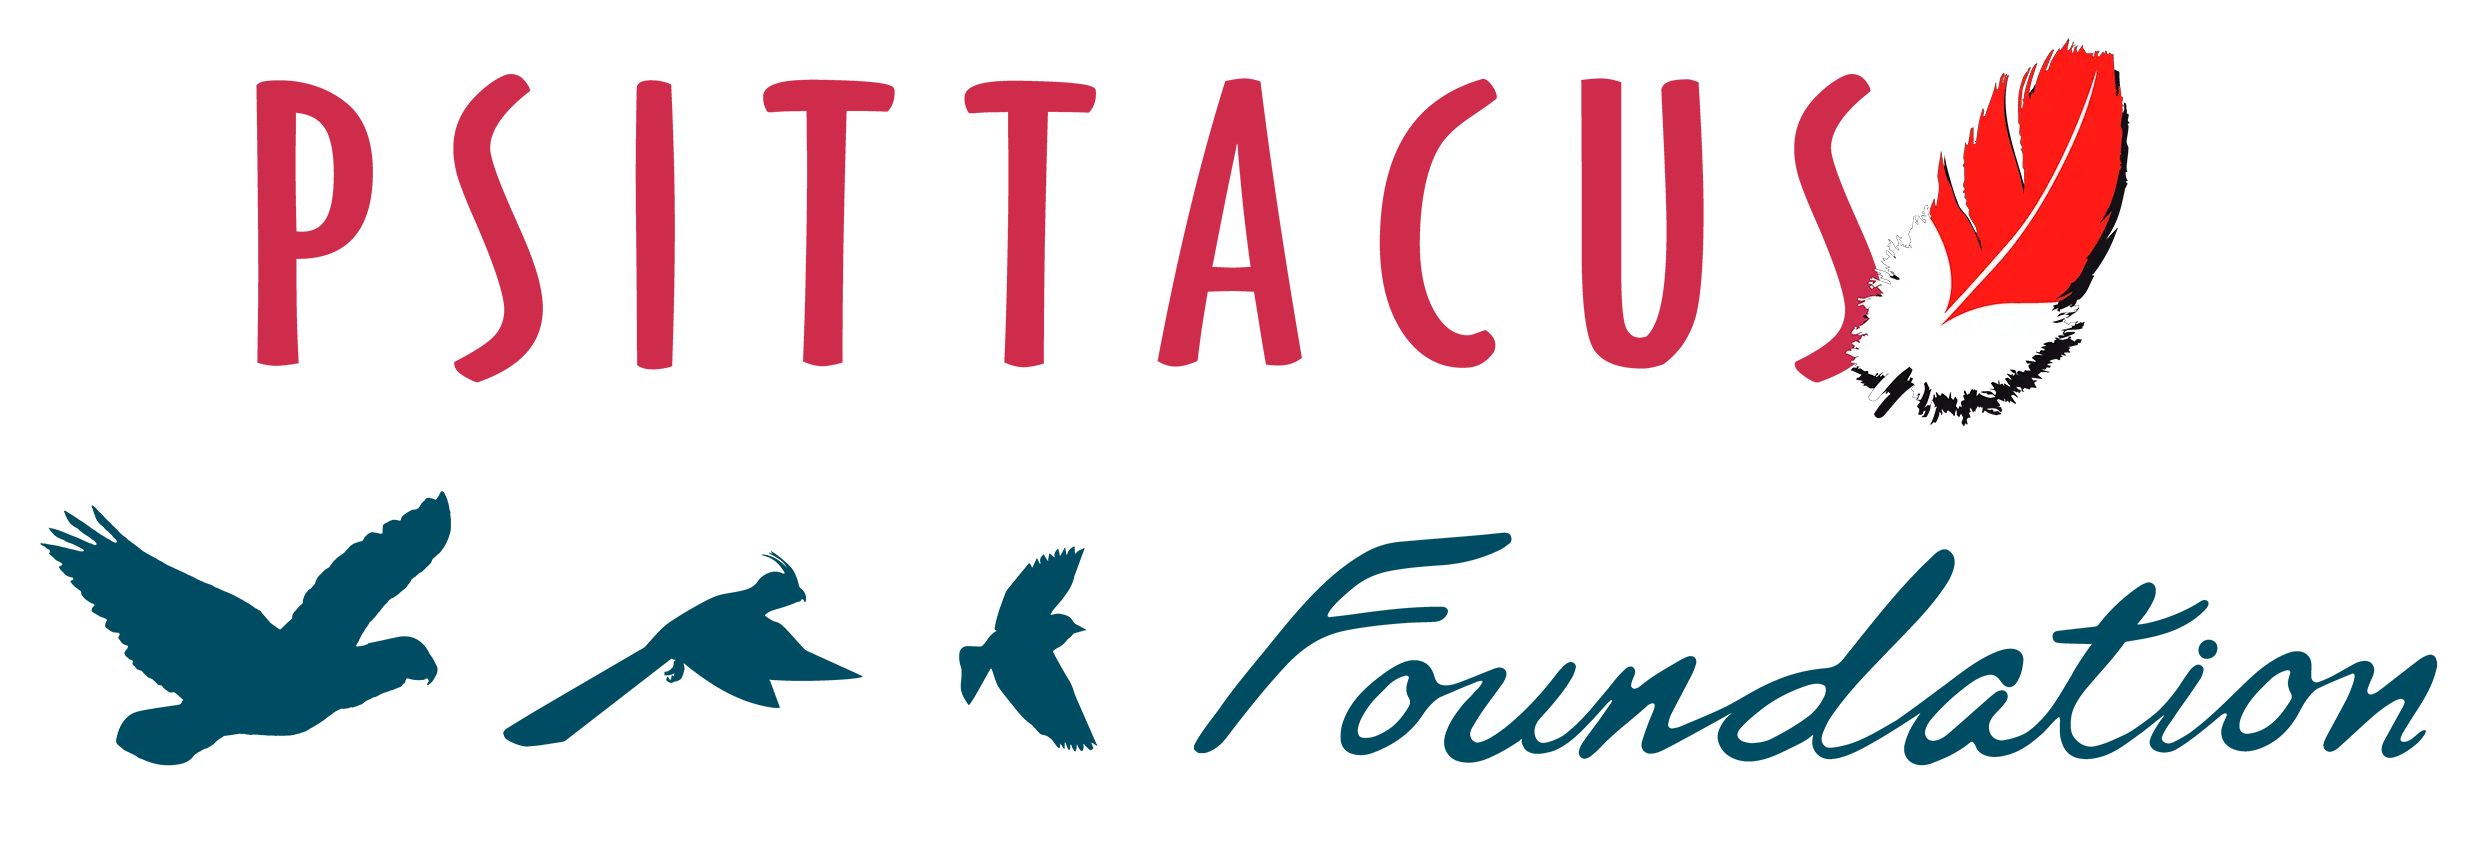 psittacus-header-image